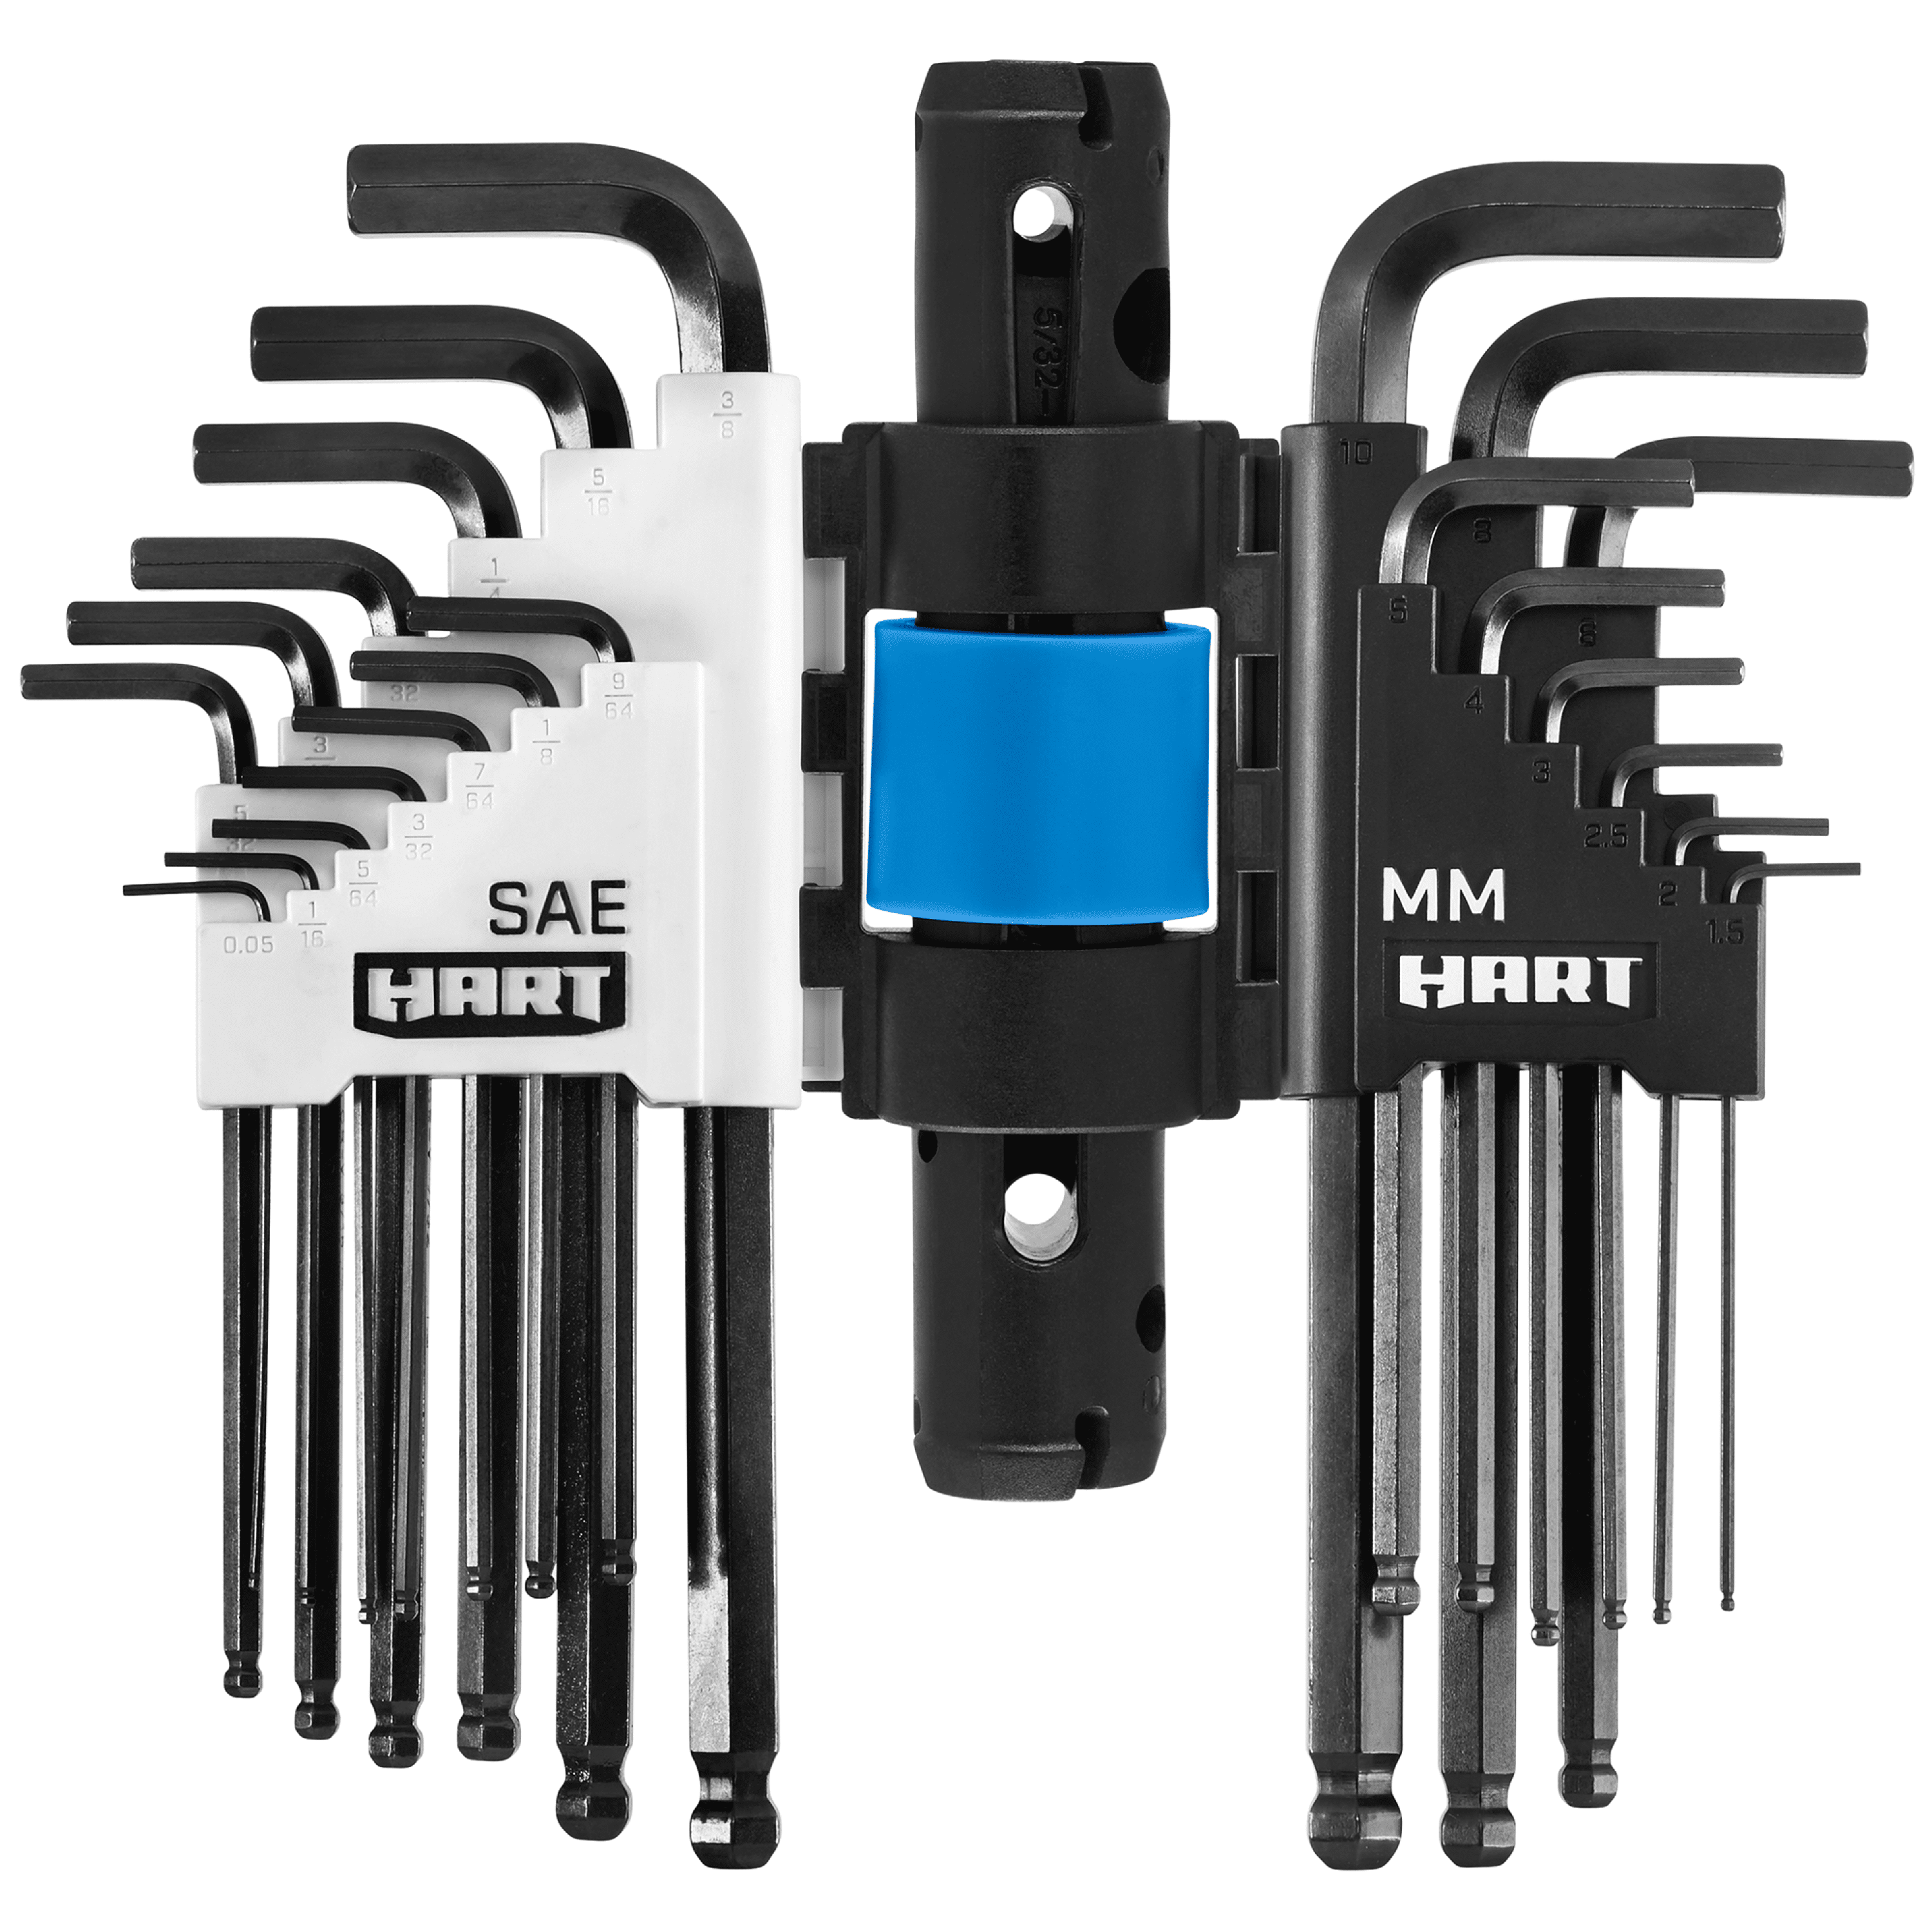 10890円 大注目 Eklind13222Ball-Hex-L Metric and SAE Key Wrench Set-22PC L MET HEX KEY